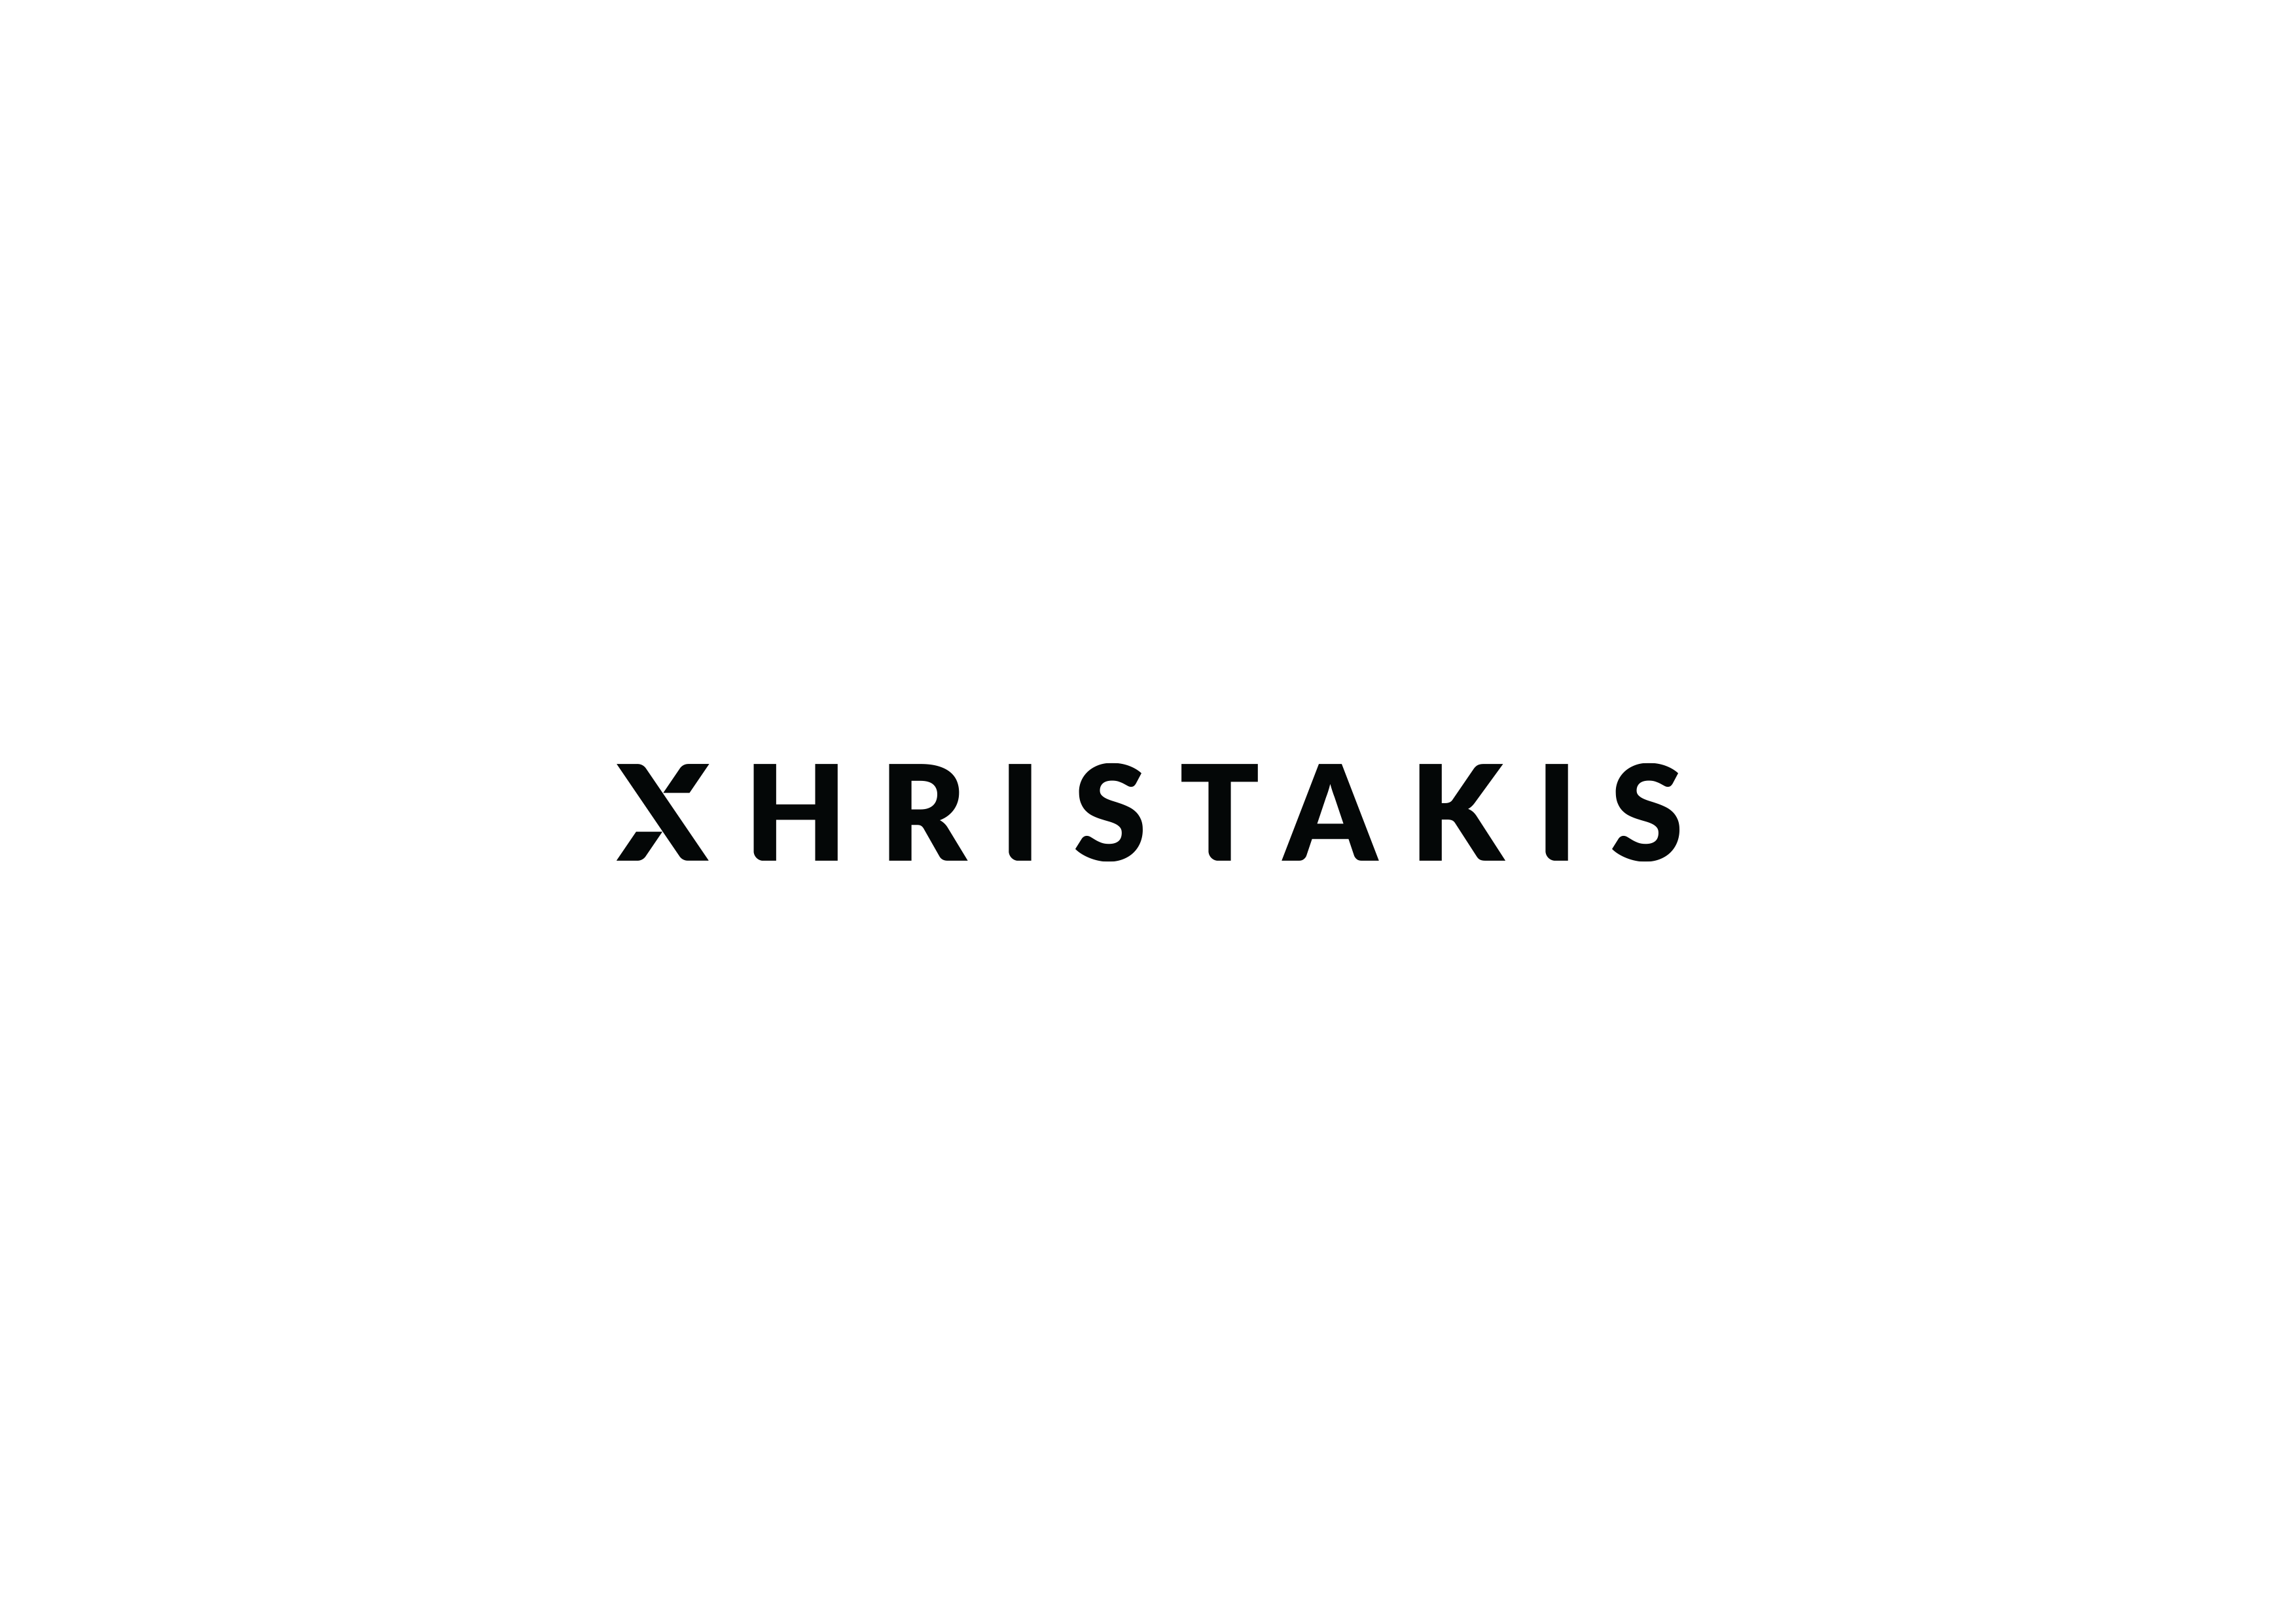 xhristakis logo gif